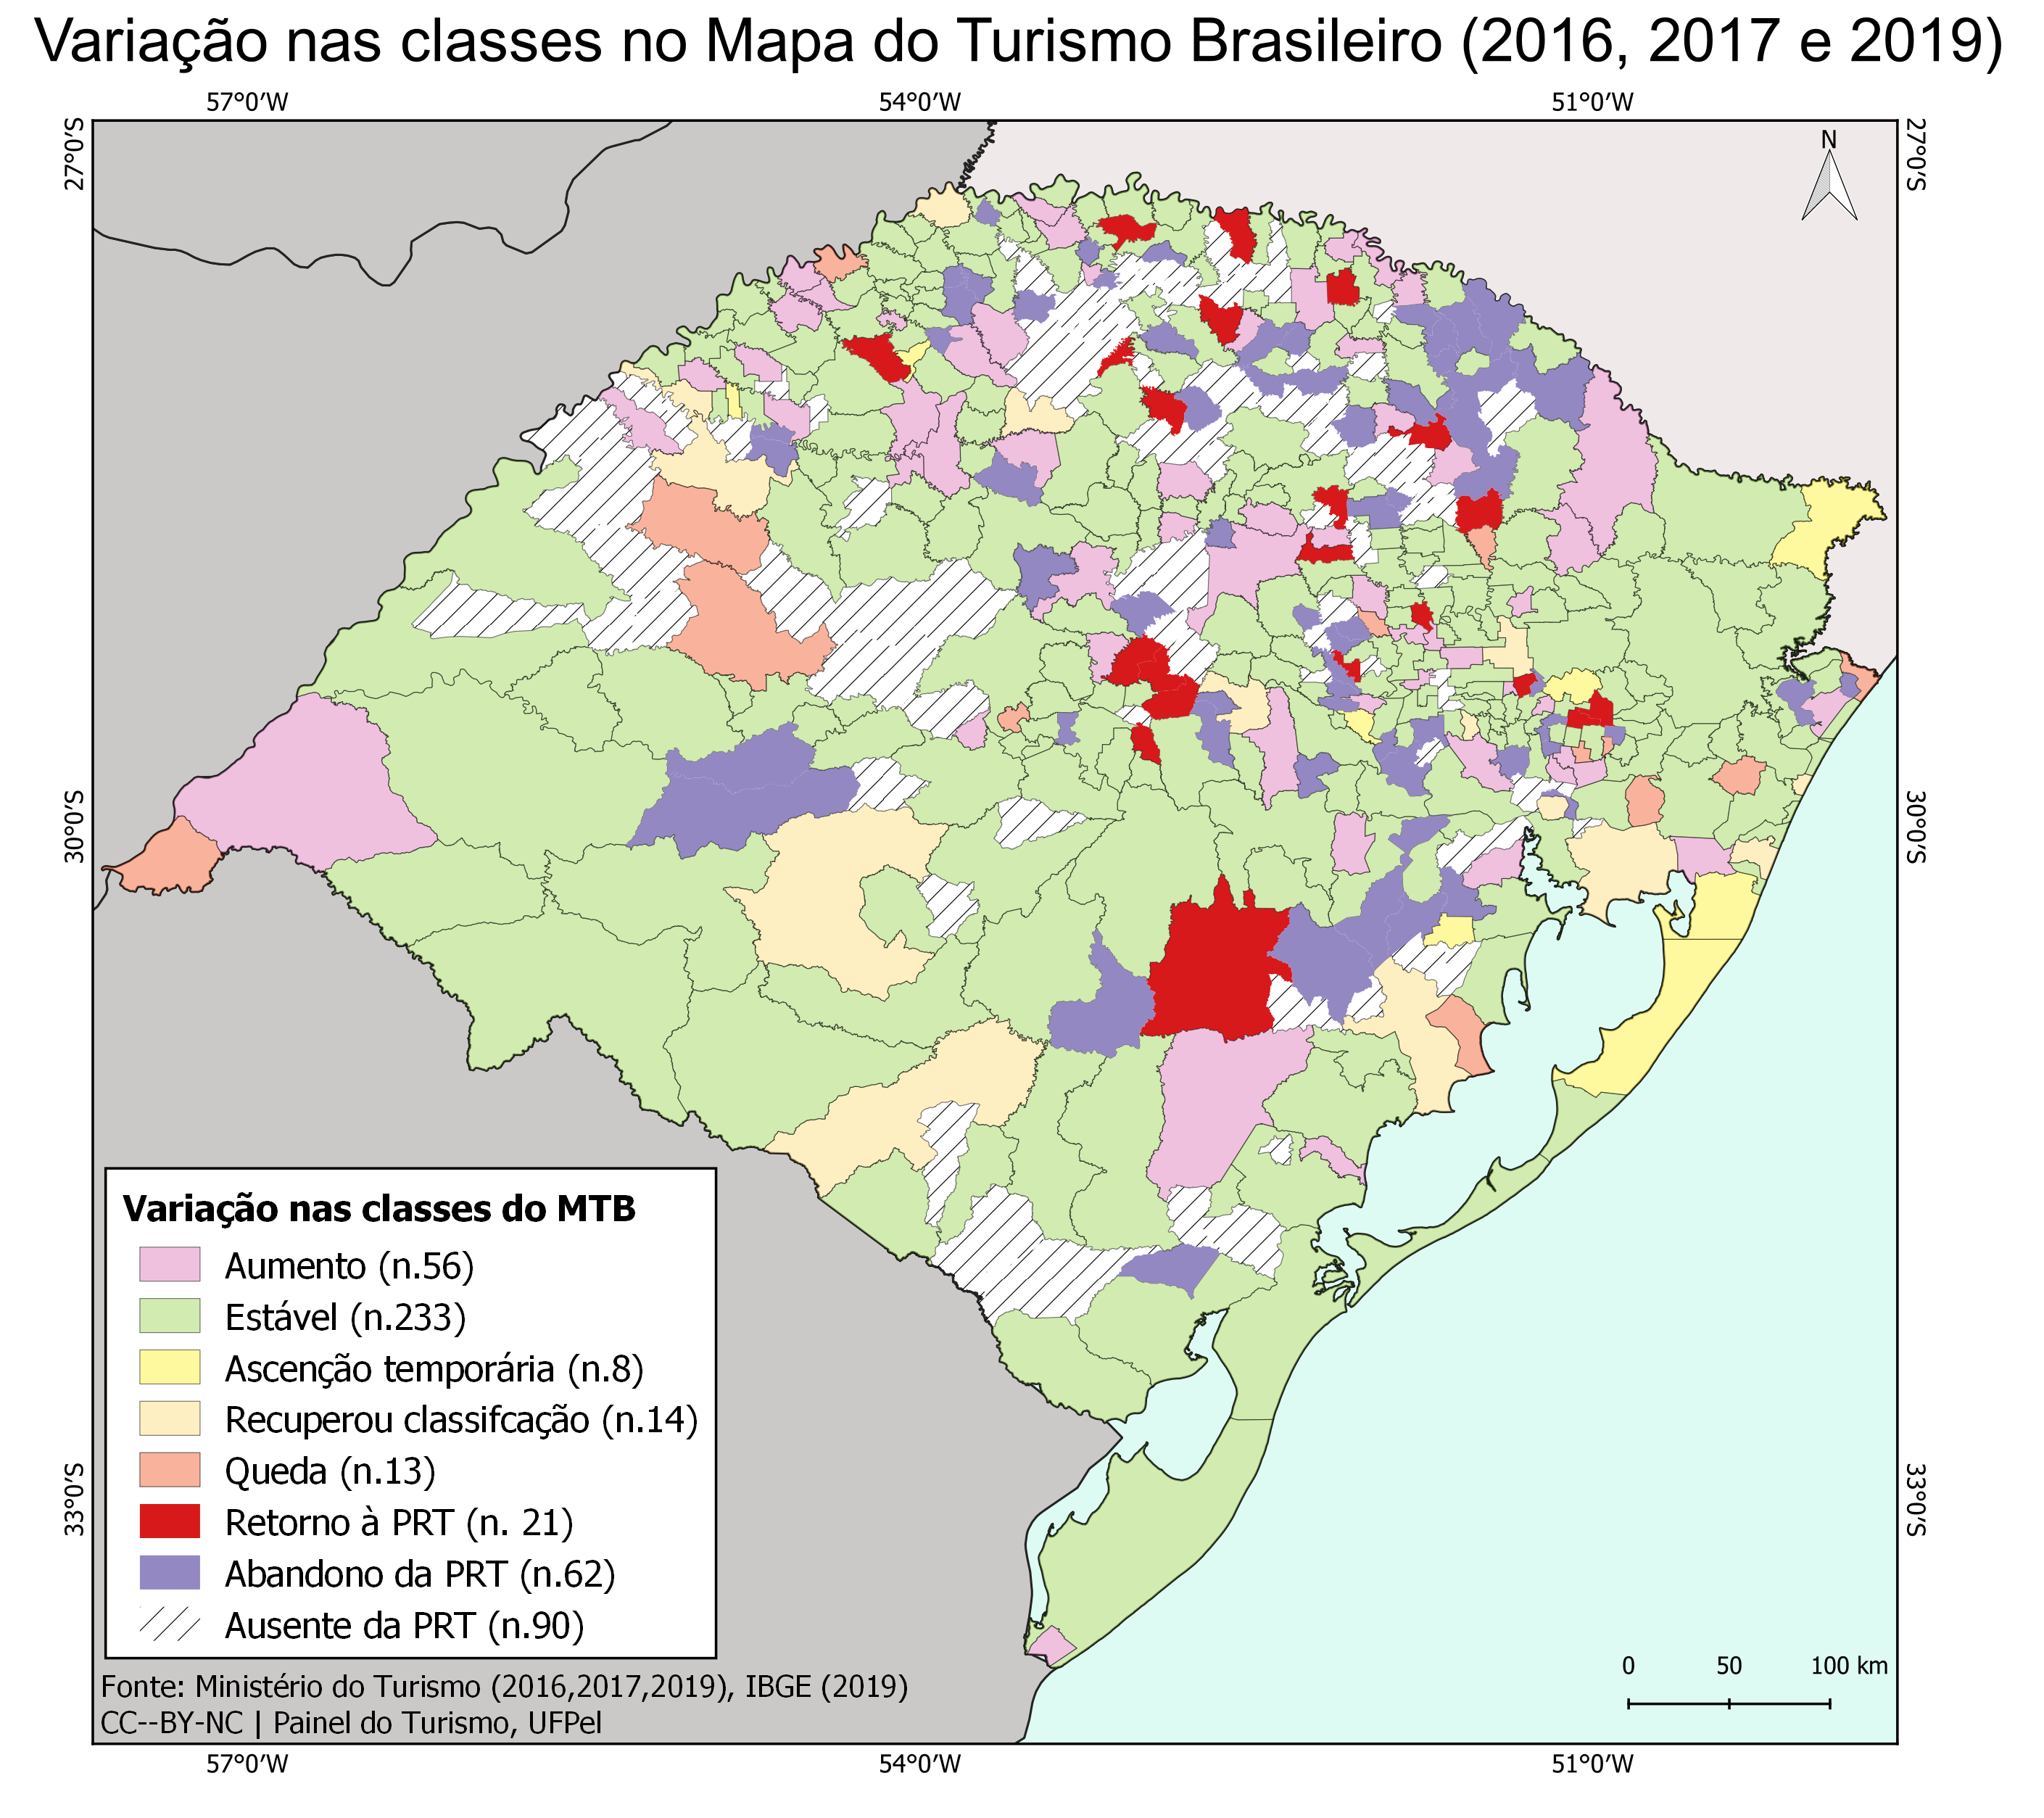 Variação nas classes do Mapa do Turismo Brasileiro (2016, 2017, 2019)